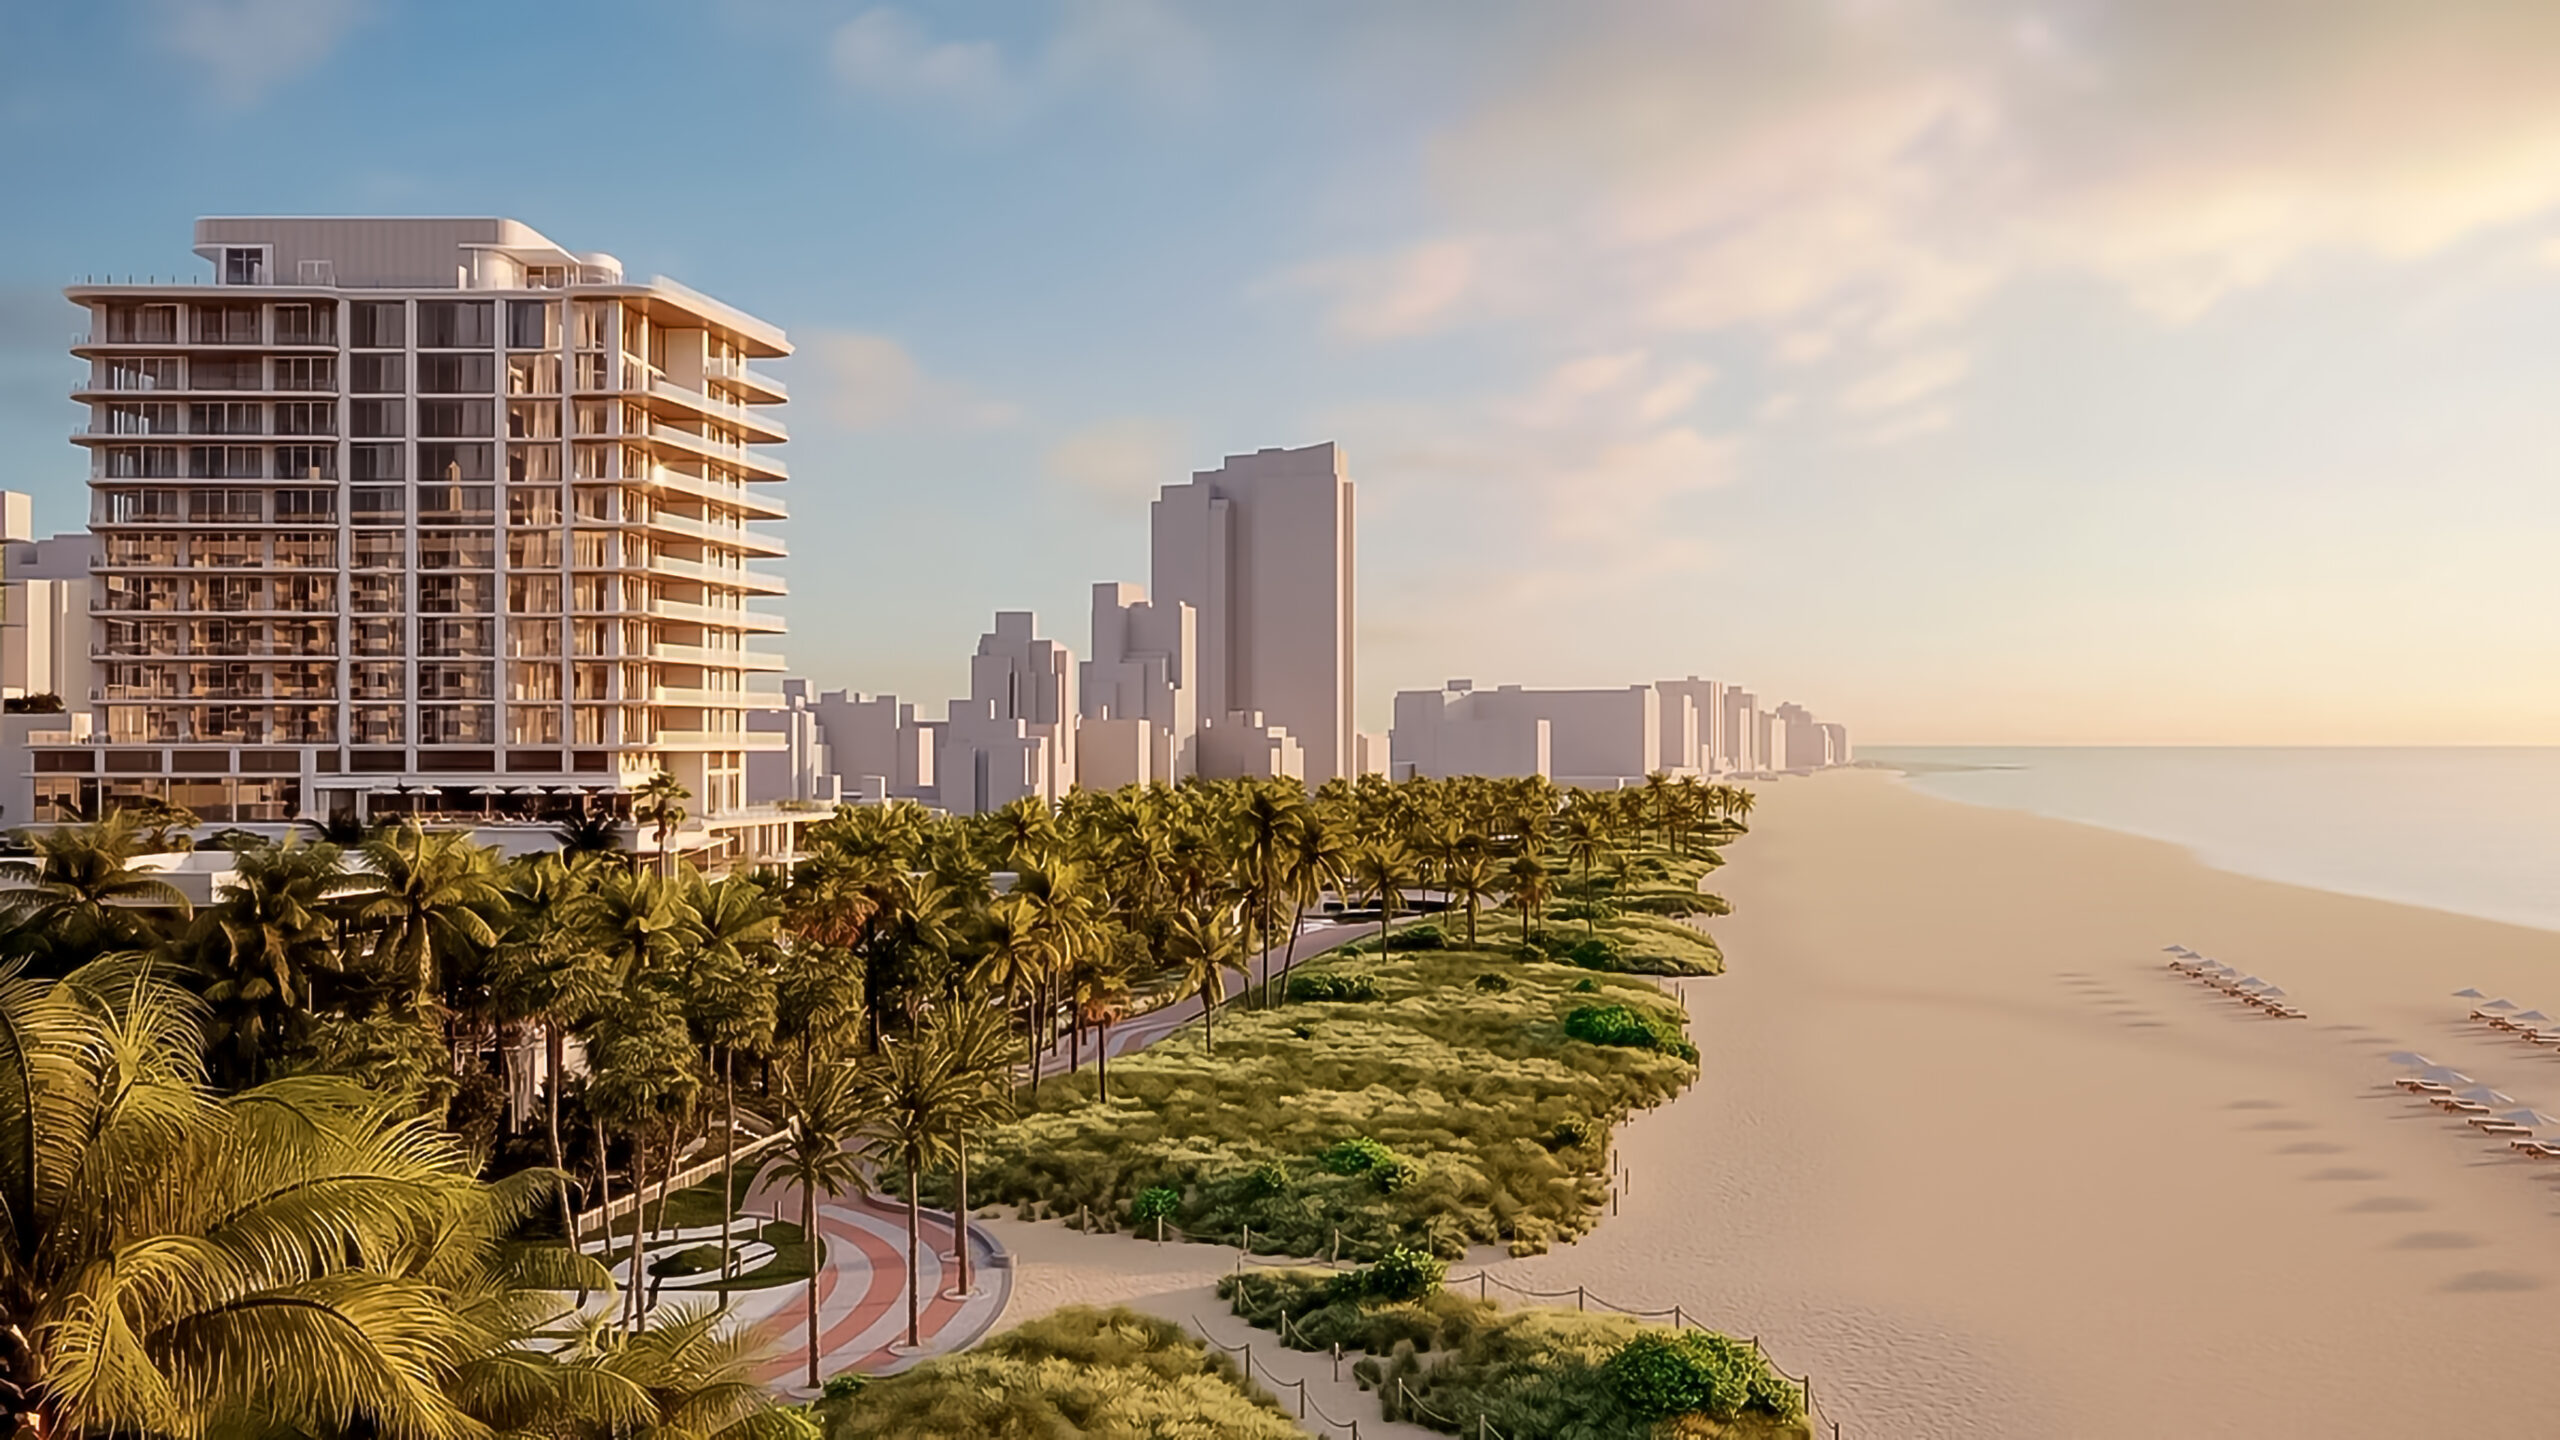 The Ritz-Carlton Residences, South Beach: A Luxury Haven Set to Redefine Miami’s Skyline